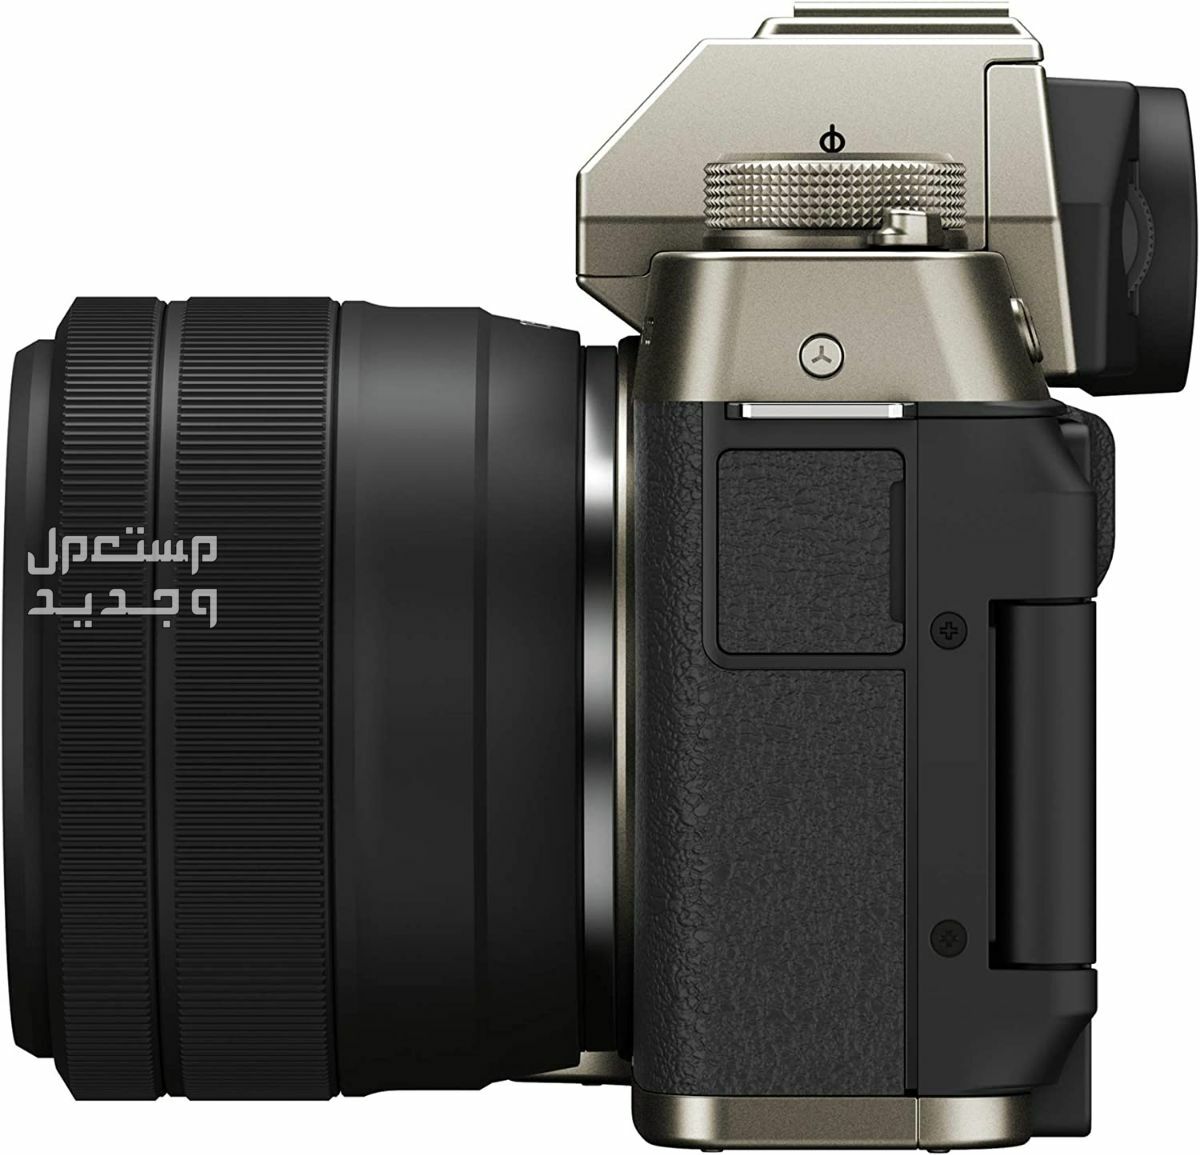 10 كاميرات تصوير ماركات عالمية بأسعار رخيصة في فلسطين سعر كاميرا Fujifilm X-T200